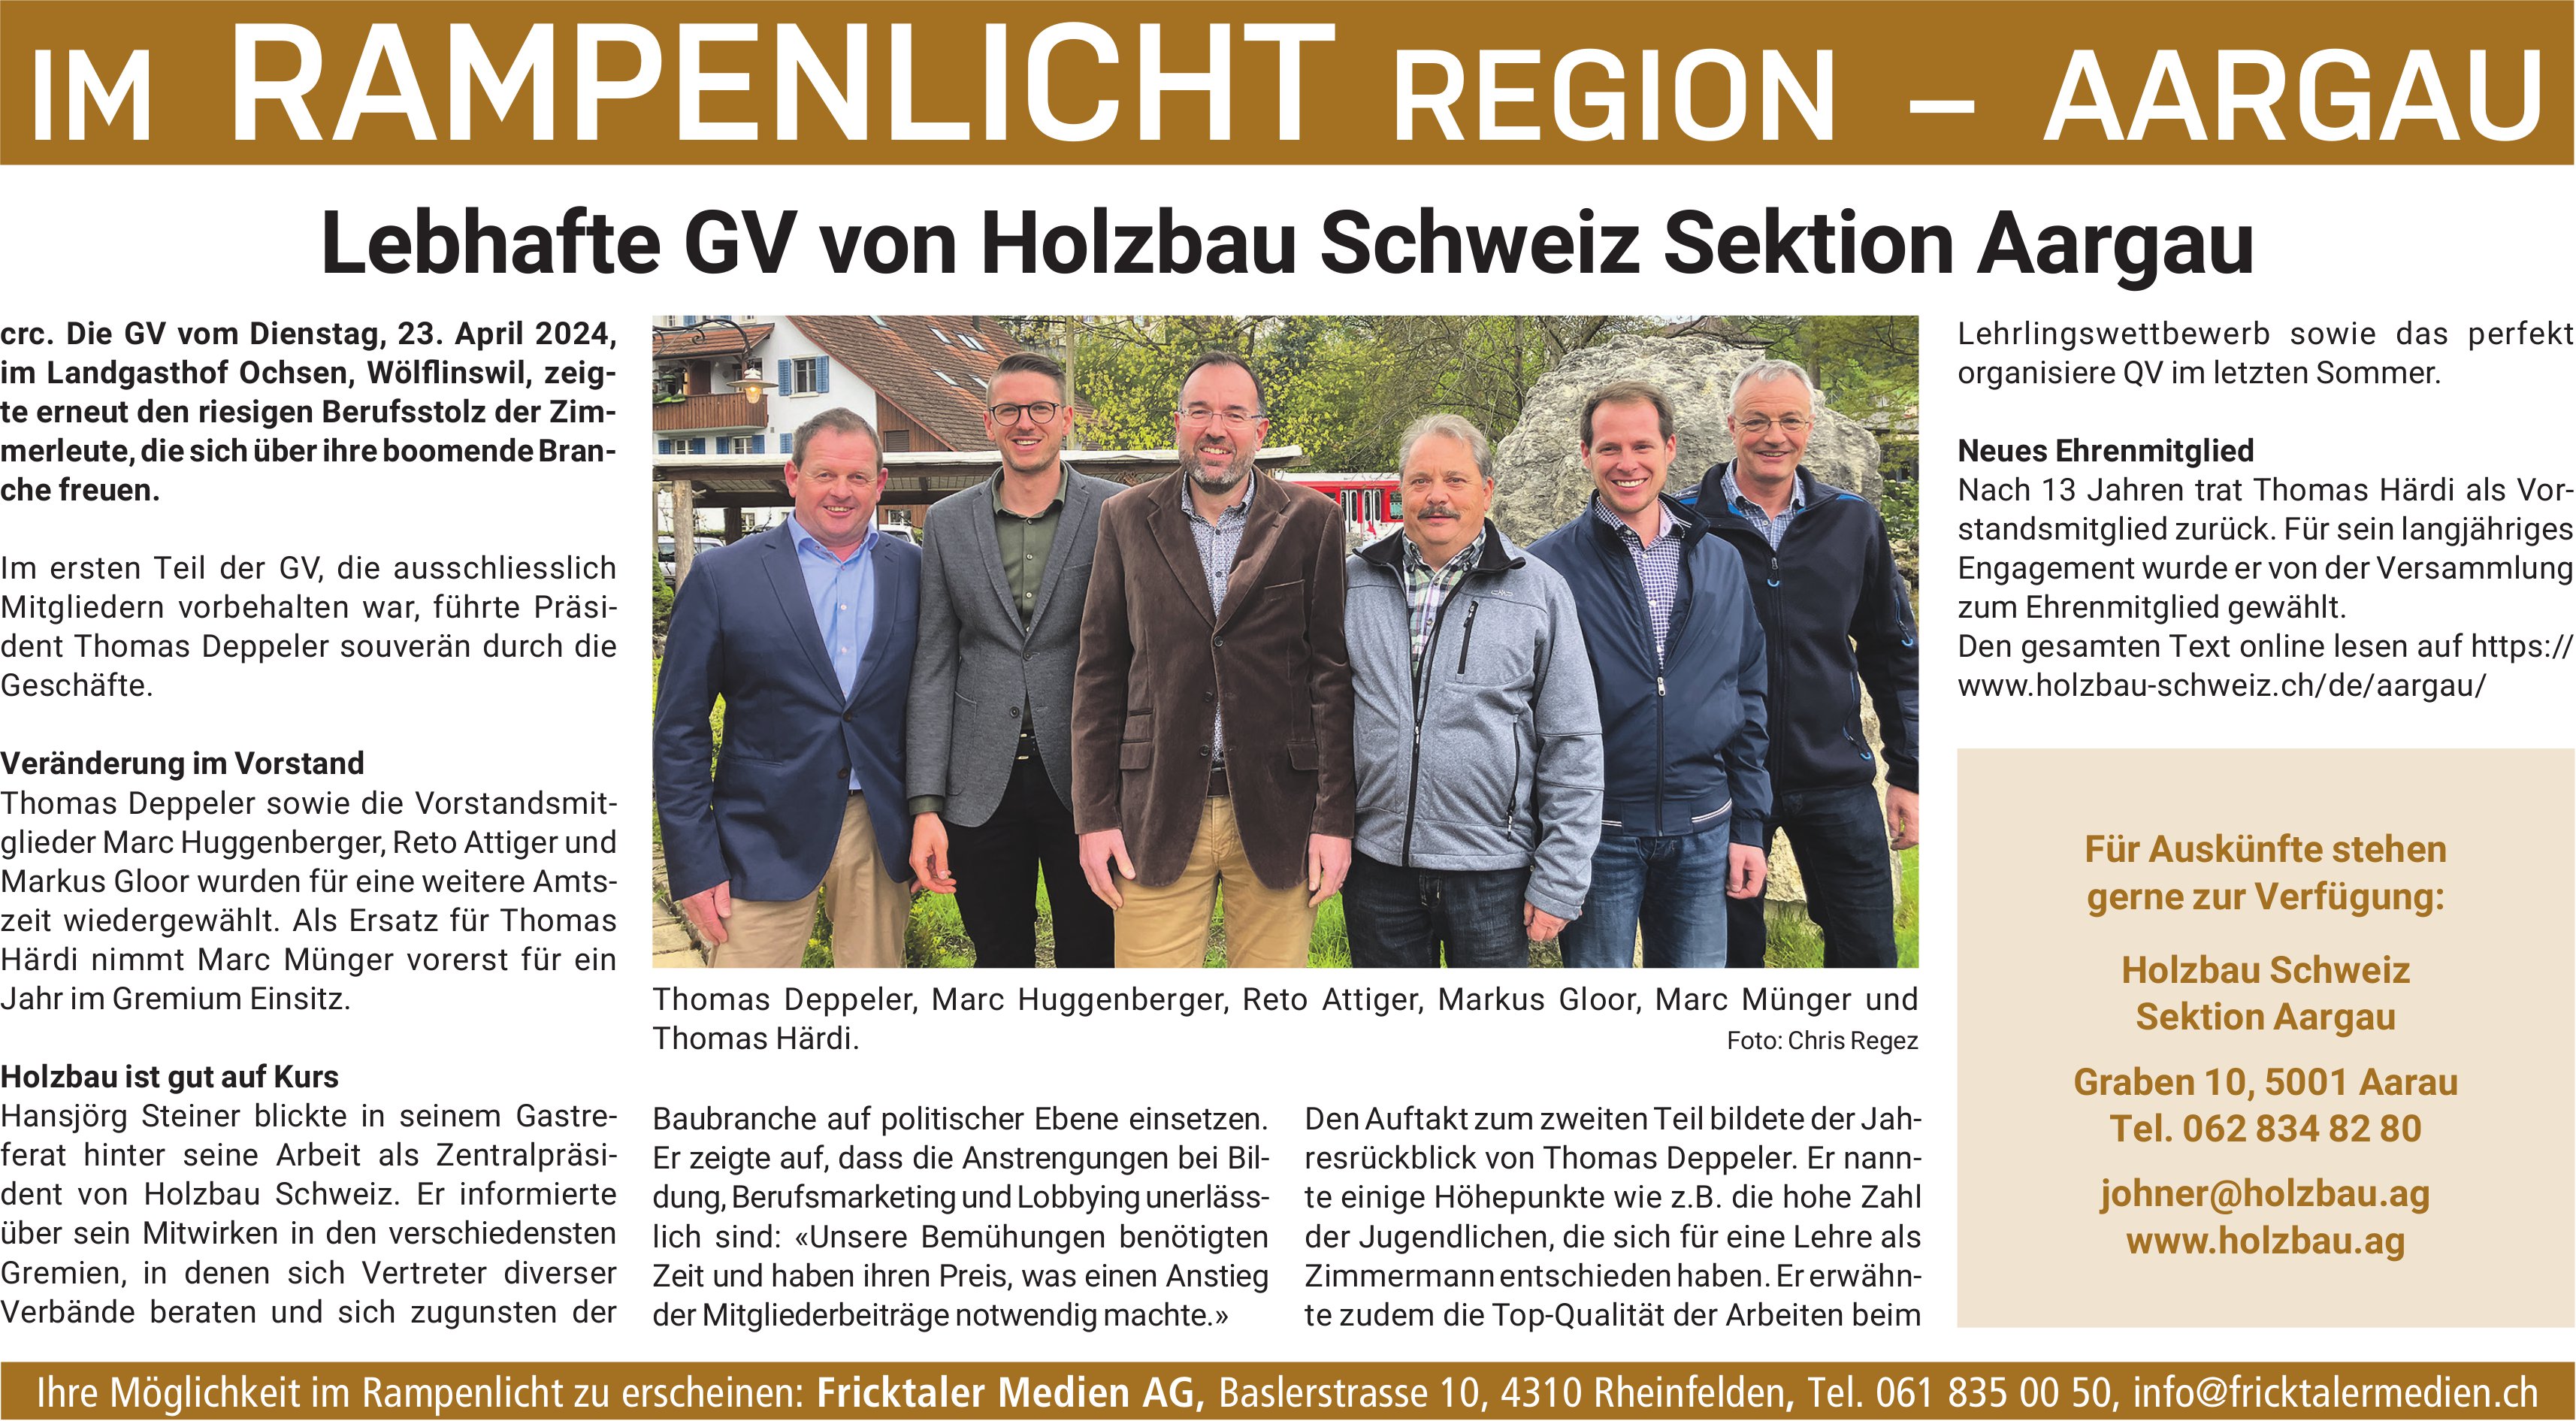 Holzbau Schweiz, Rheinfelden - Lebhafte GV von Holzbau Schweiz Sektion Aargau